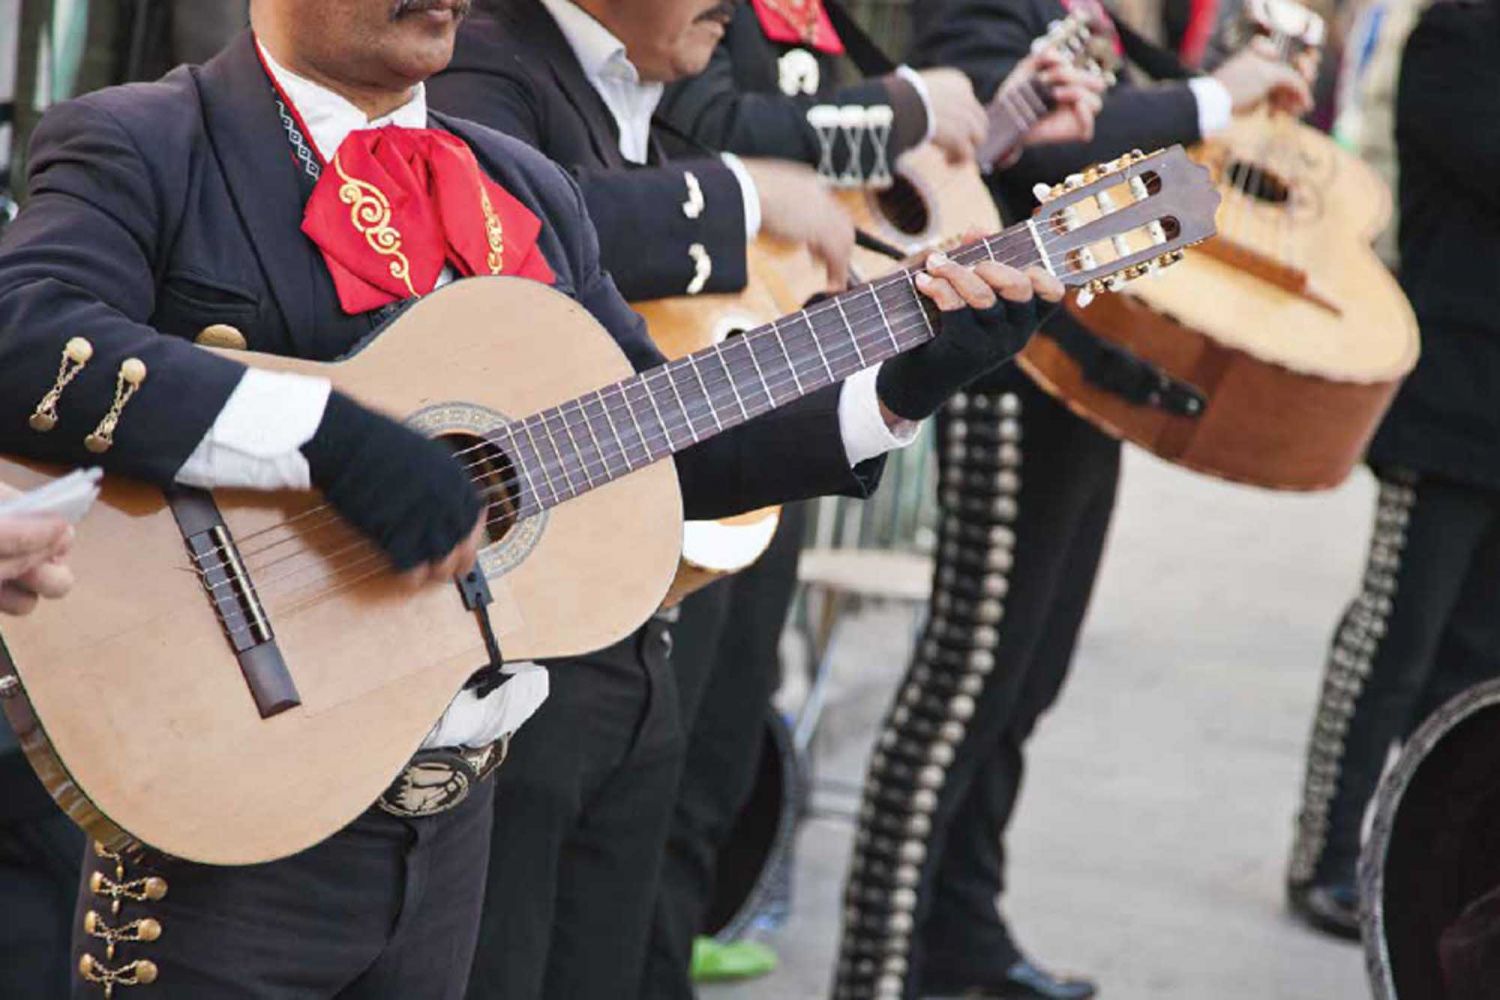 Los mariachis son de Jalisco: ¿mito o realidad?